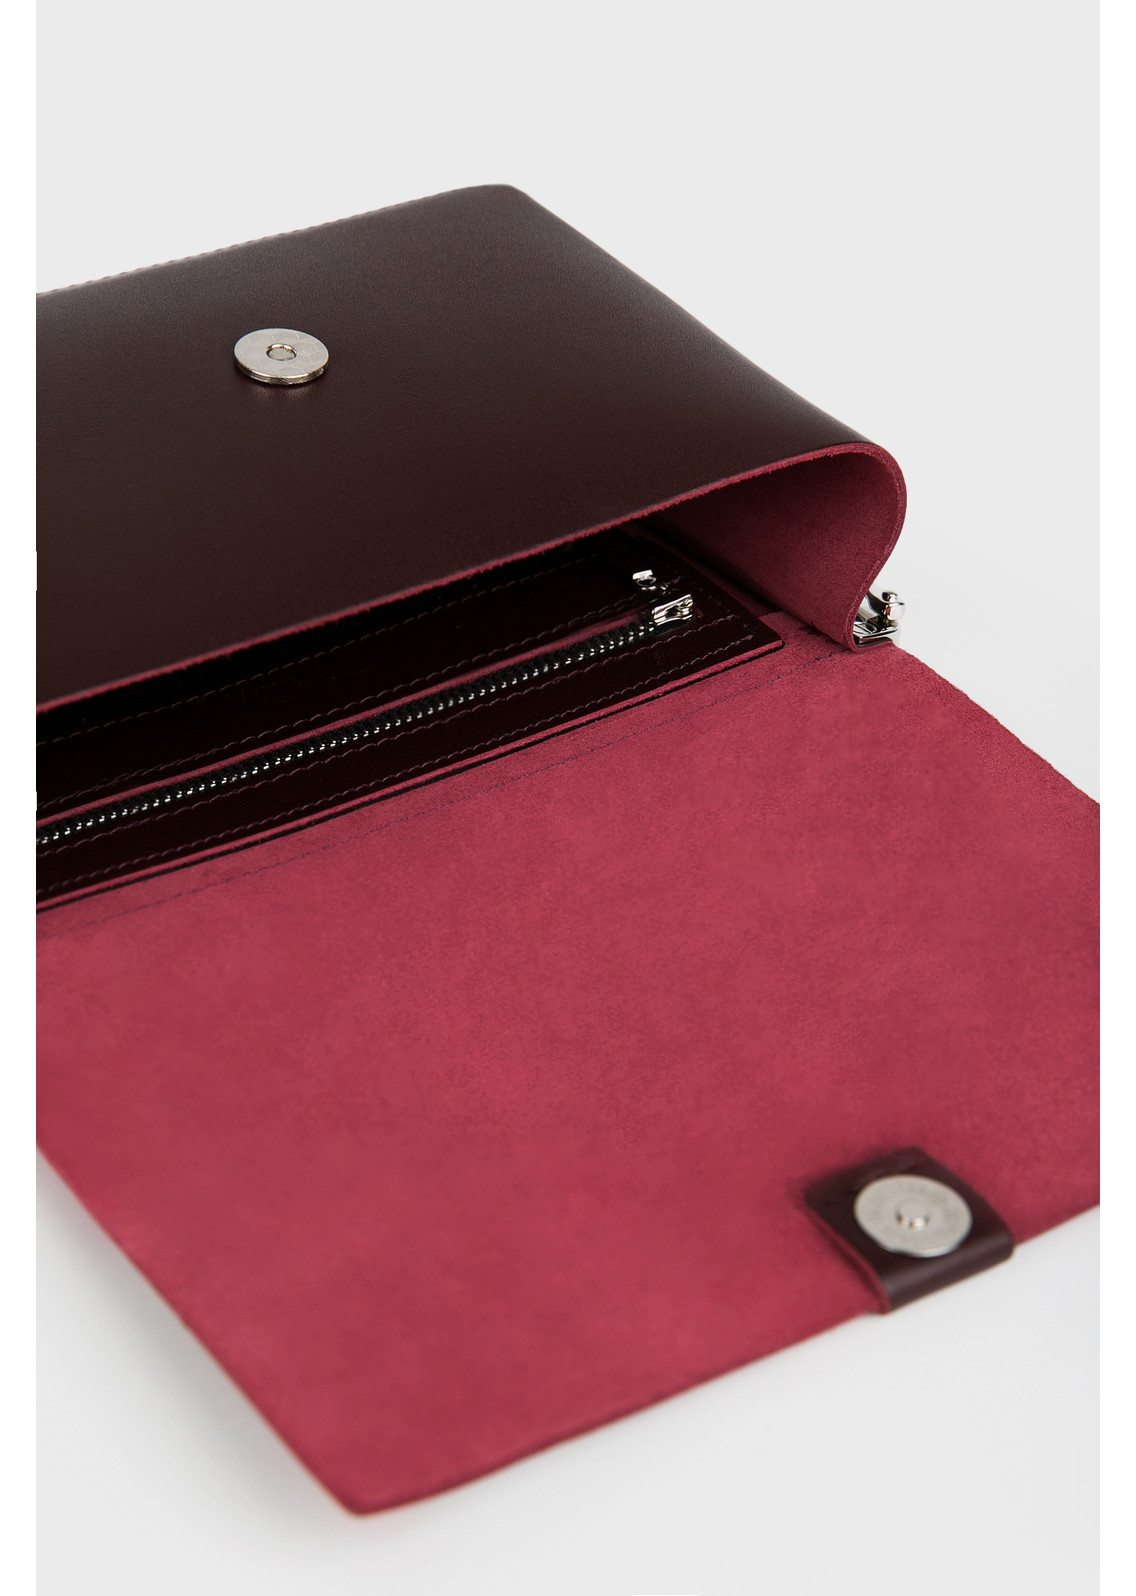 Женская сумка через плечо из натуральной кожи бордовая A005 burgundy